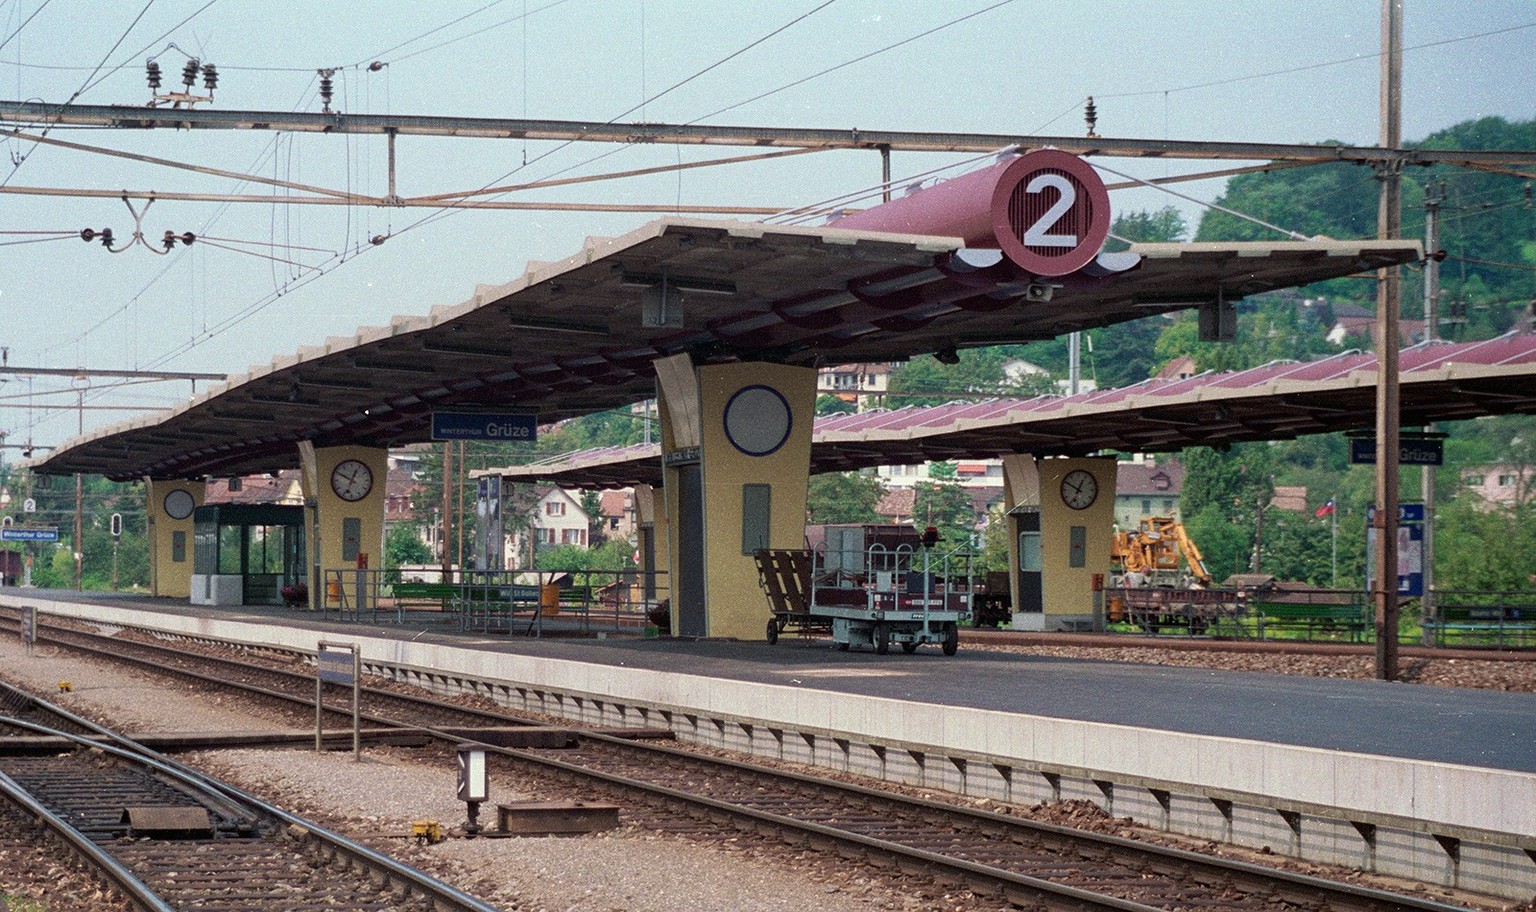 Perrondächer des Bahnhofs Winterthur-Grüze, entworfen von Hans Hifiker, Aufnahme von 1992.
http://doi.org/10.3932/ethz-a-000538891